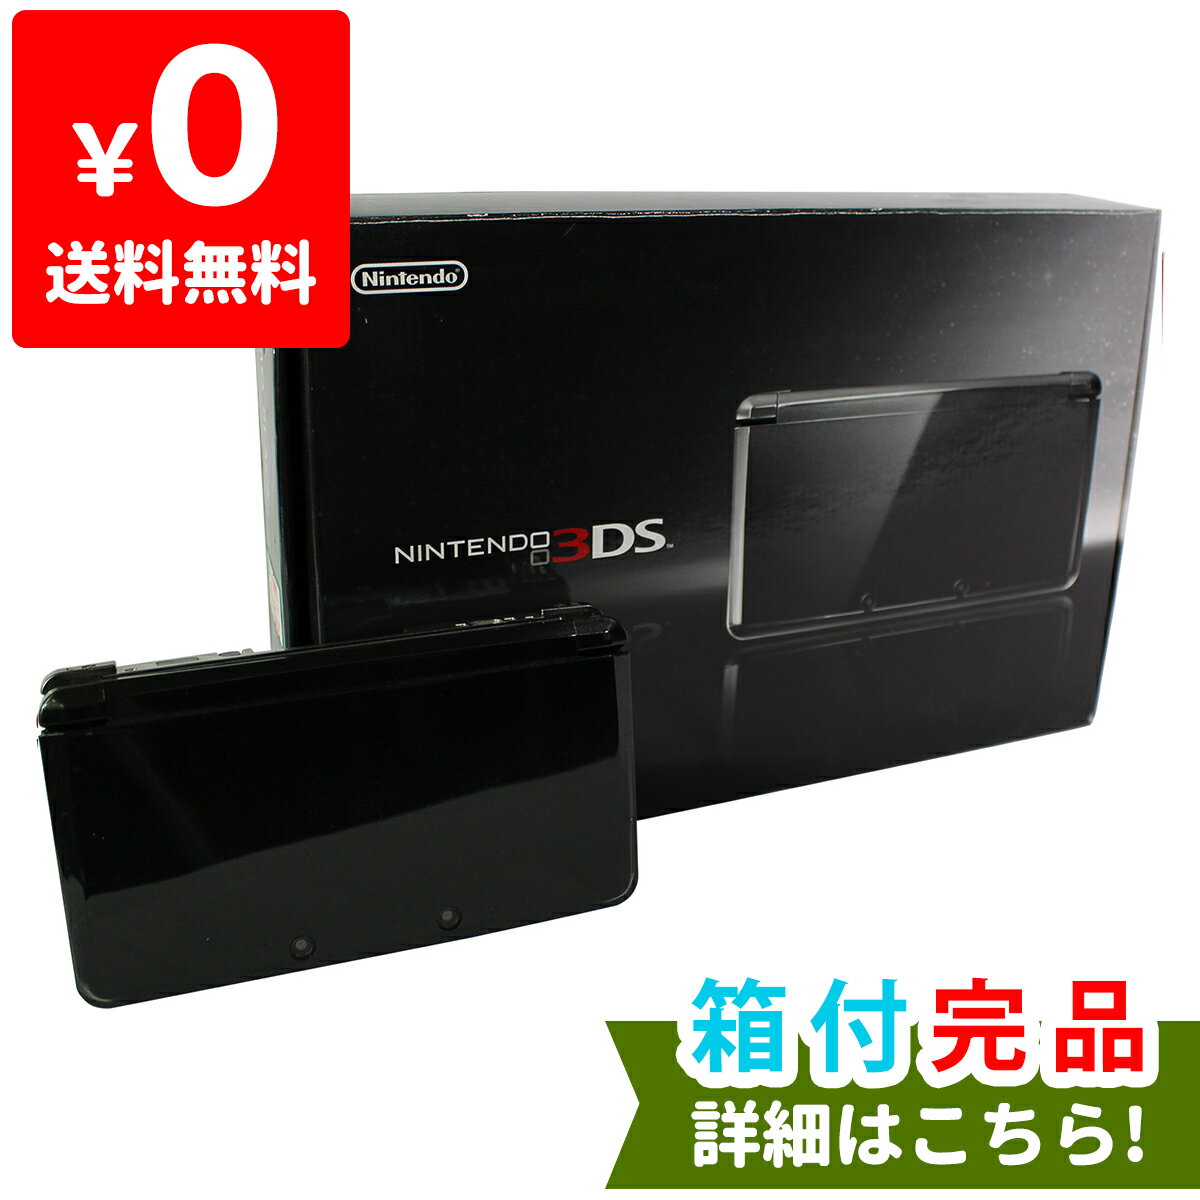 3DS 本体 中古 付属品完備 ニンテンドー 任天堂 Nintendo ニンテンドー3DS 4902370518757 コスモブラック 完品  当店在庫してます！ 外箱付き